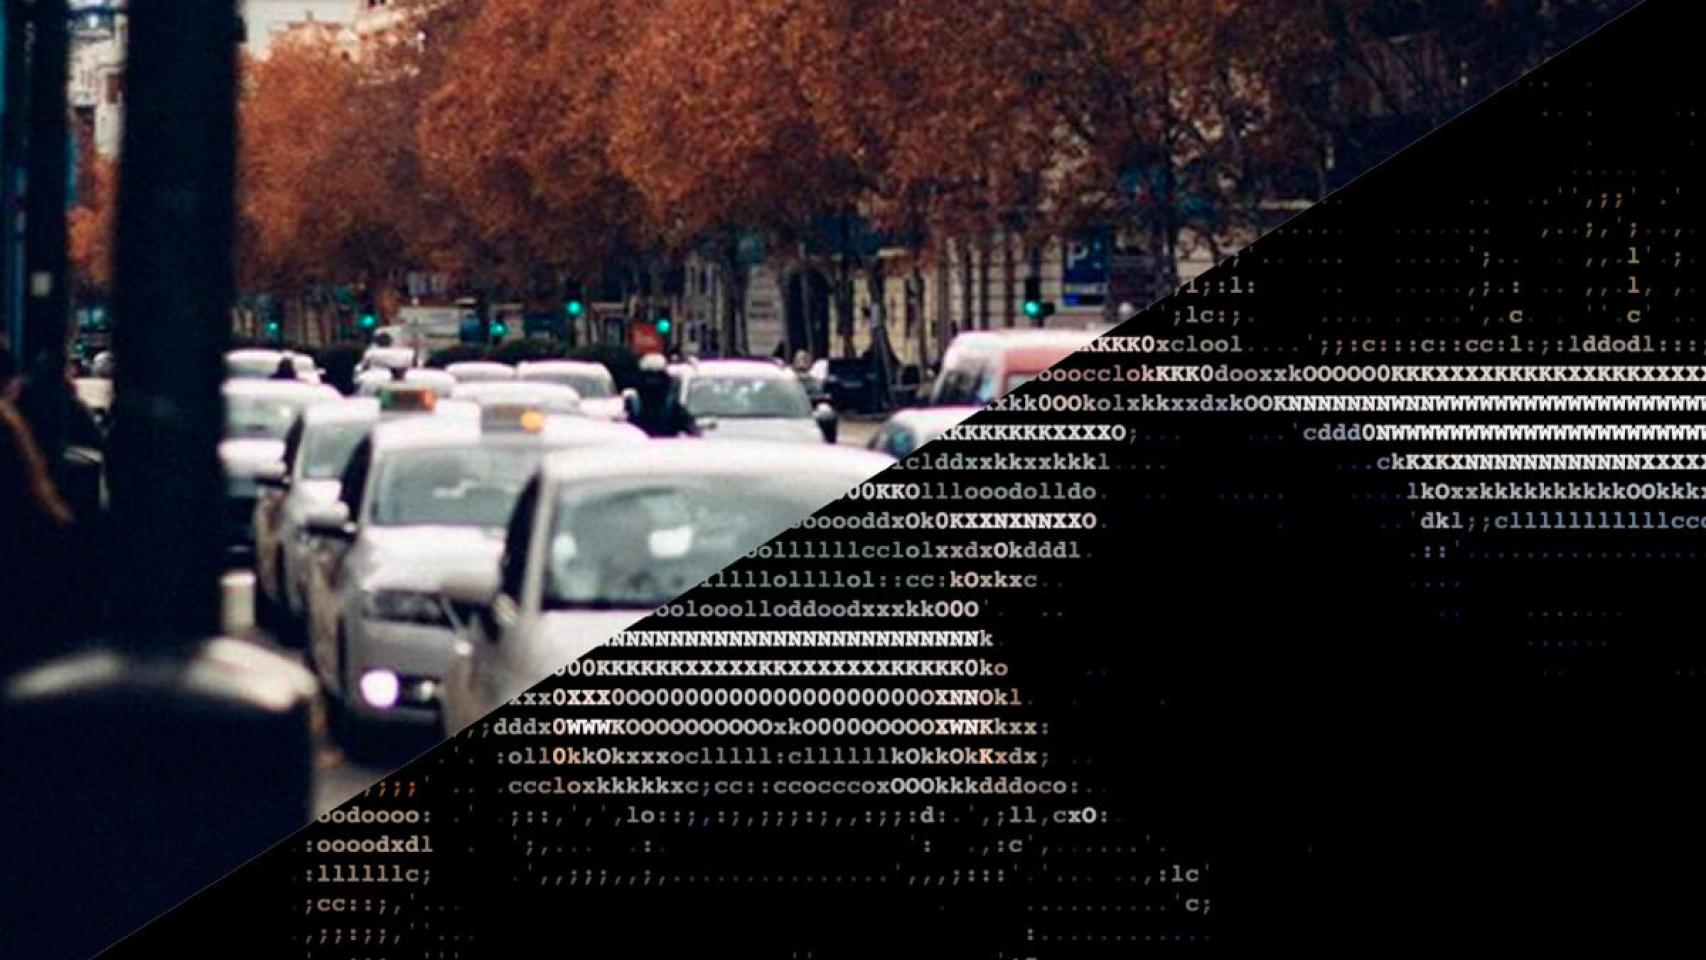 Truco para Instagram: convierte tus imágenes en texto ASCII